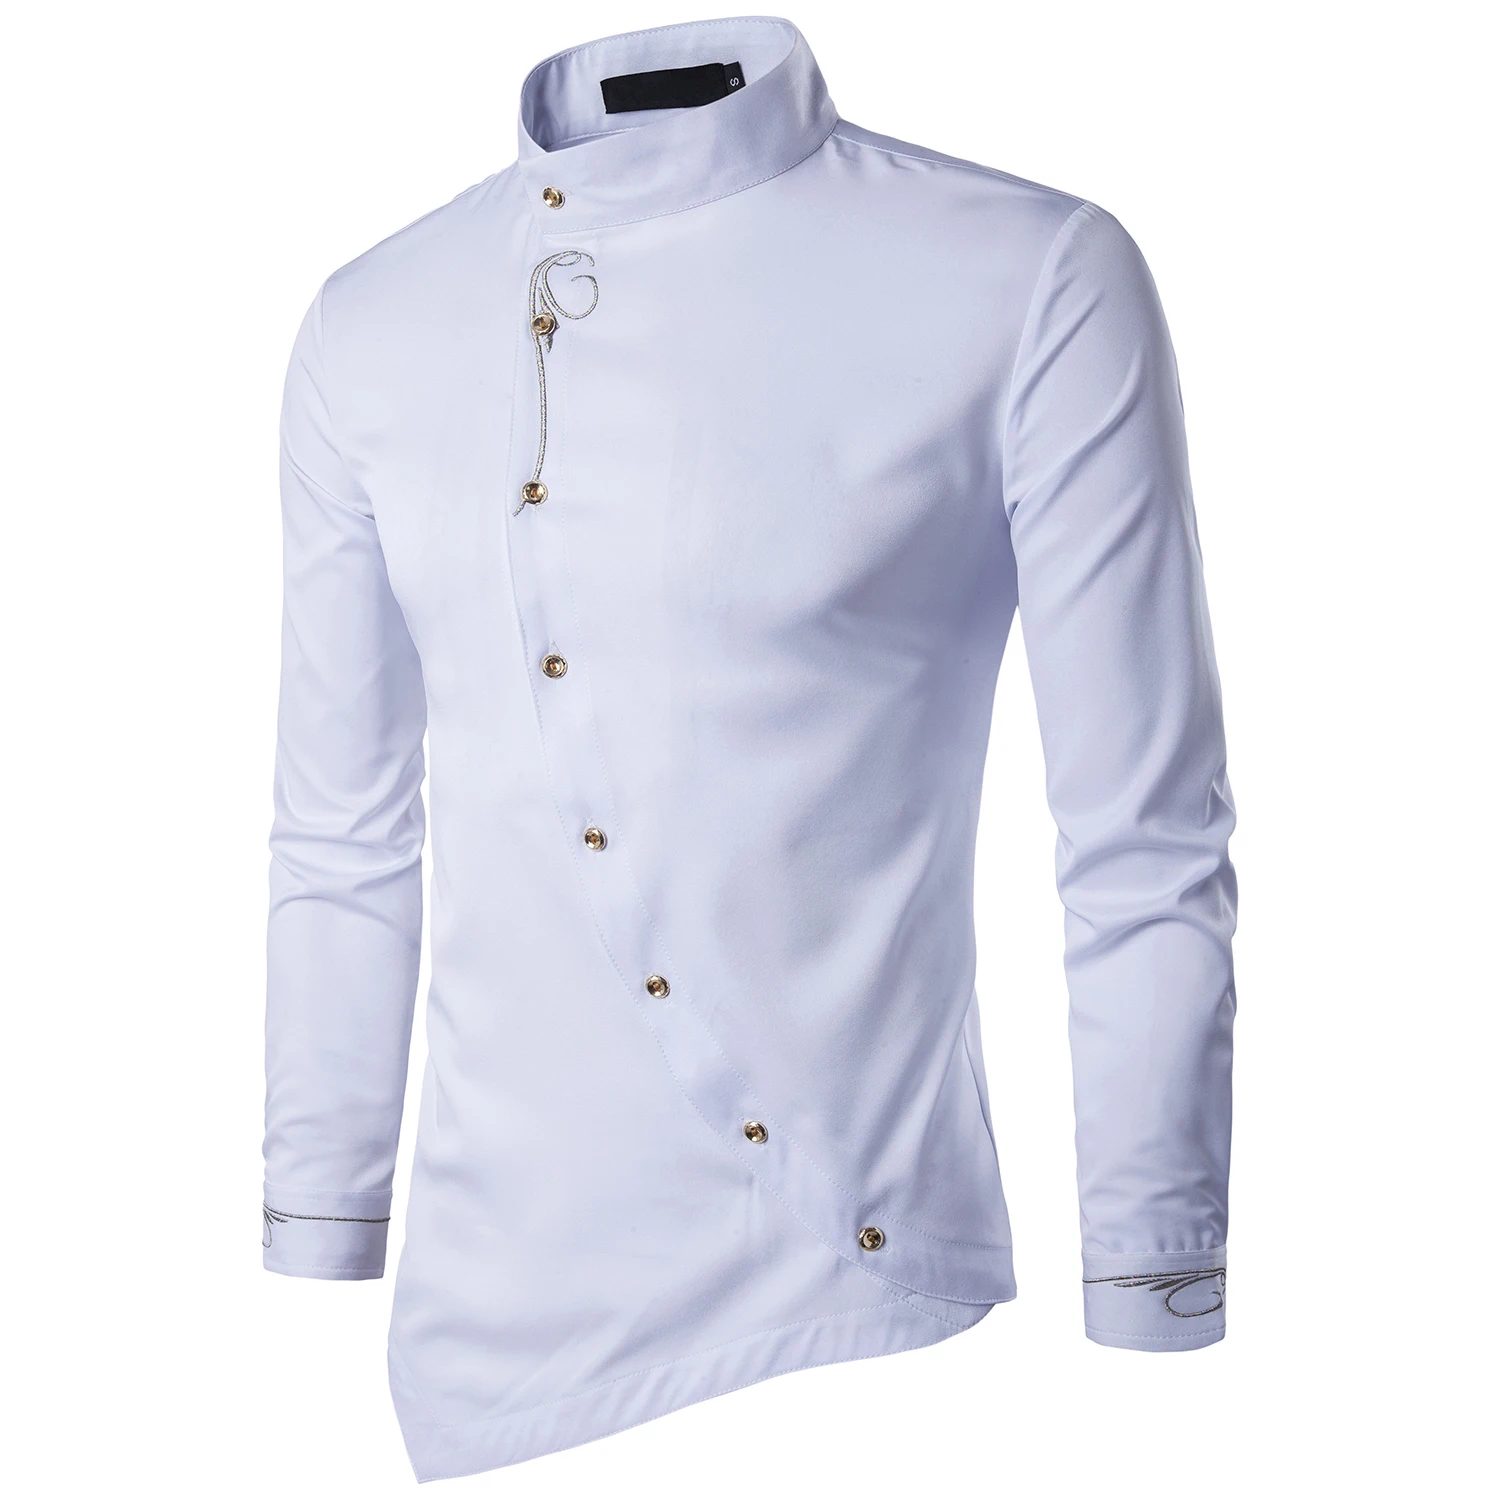 Модная мужская рубашка, брендовая, с косой пуговицей, воротник-стойка, мужской смокинг, с длинным рукавом, рубашки для мужчин, большой размер 2XL - Цвет: Белый